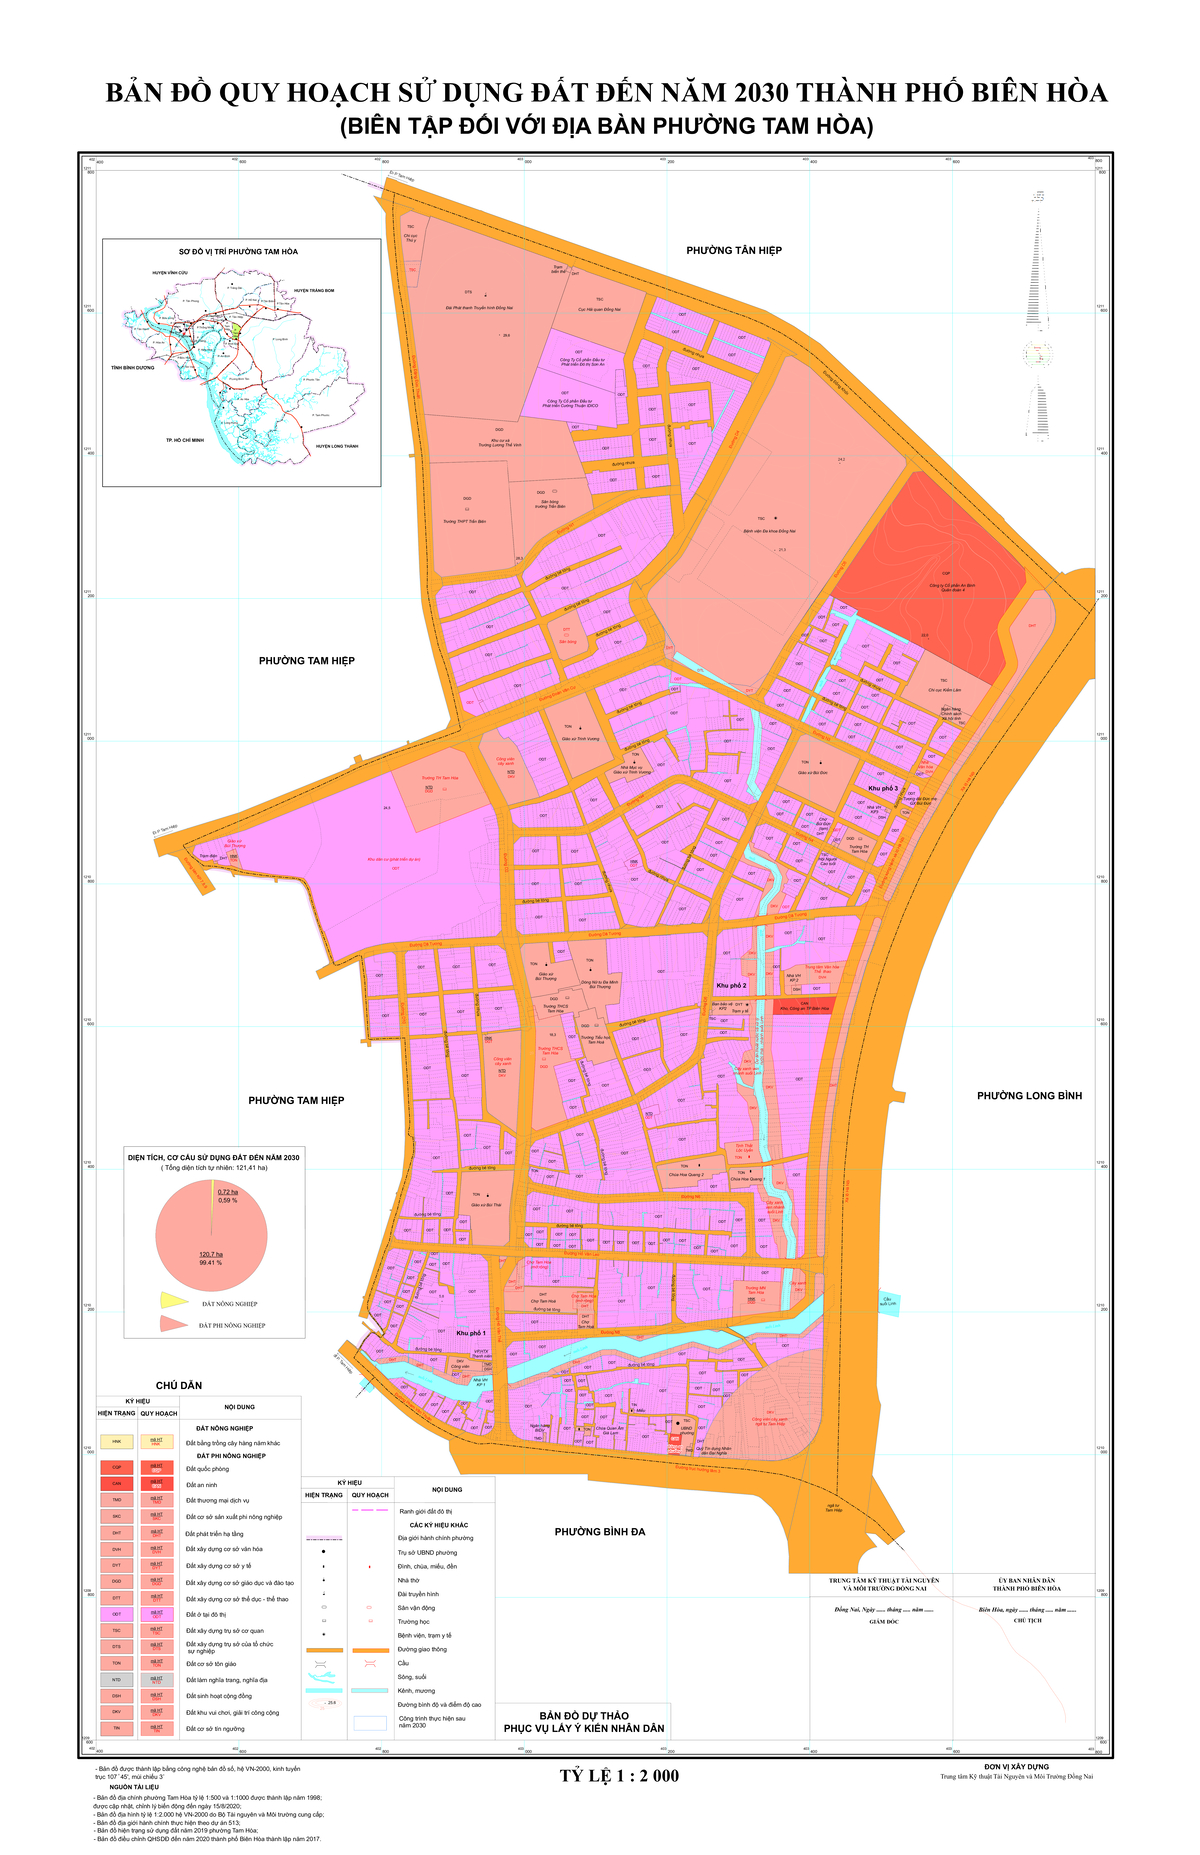 Bản đồ quy hoạch phường Tam Hòa, thành phố Biên Hòa, tỉnh Đồng Nai đến năm 2030